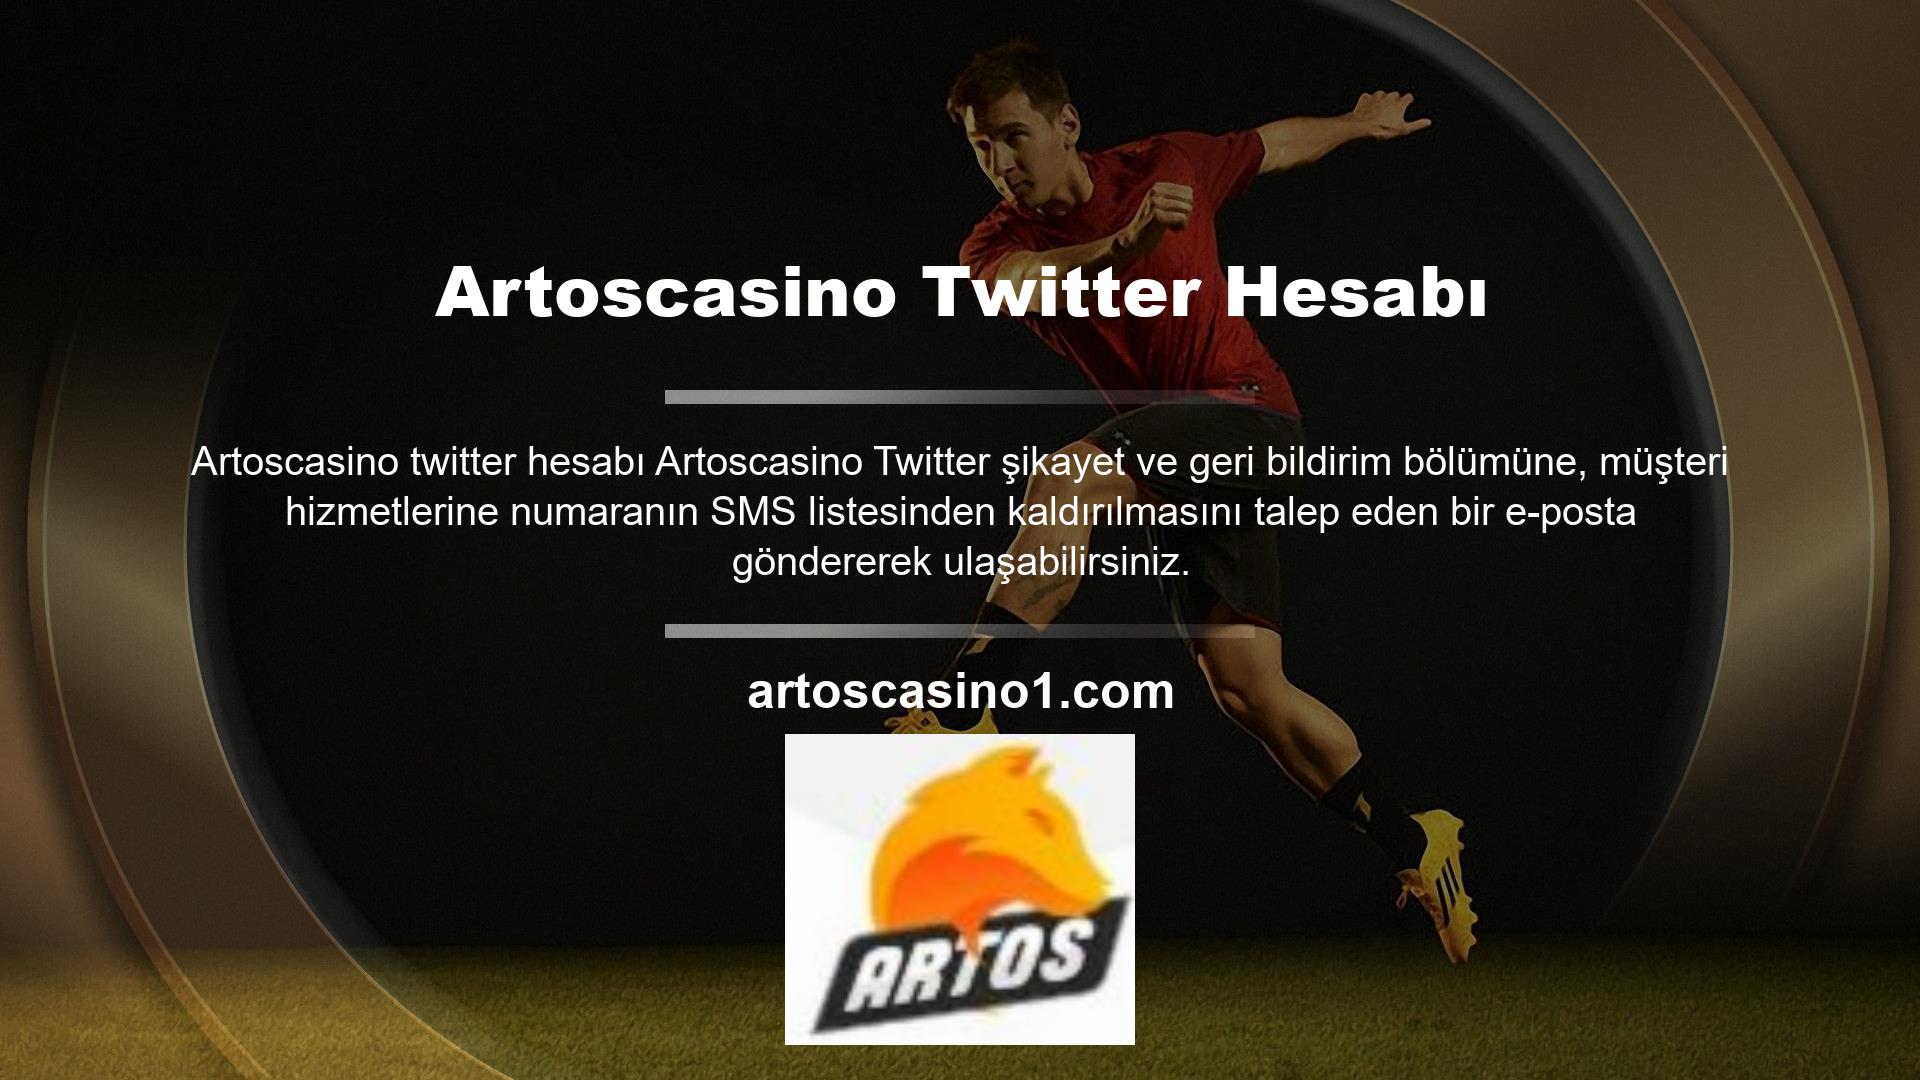 Artoscasino Twitter şikayetleri ve tweet'leri